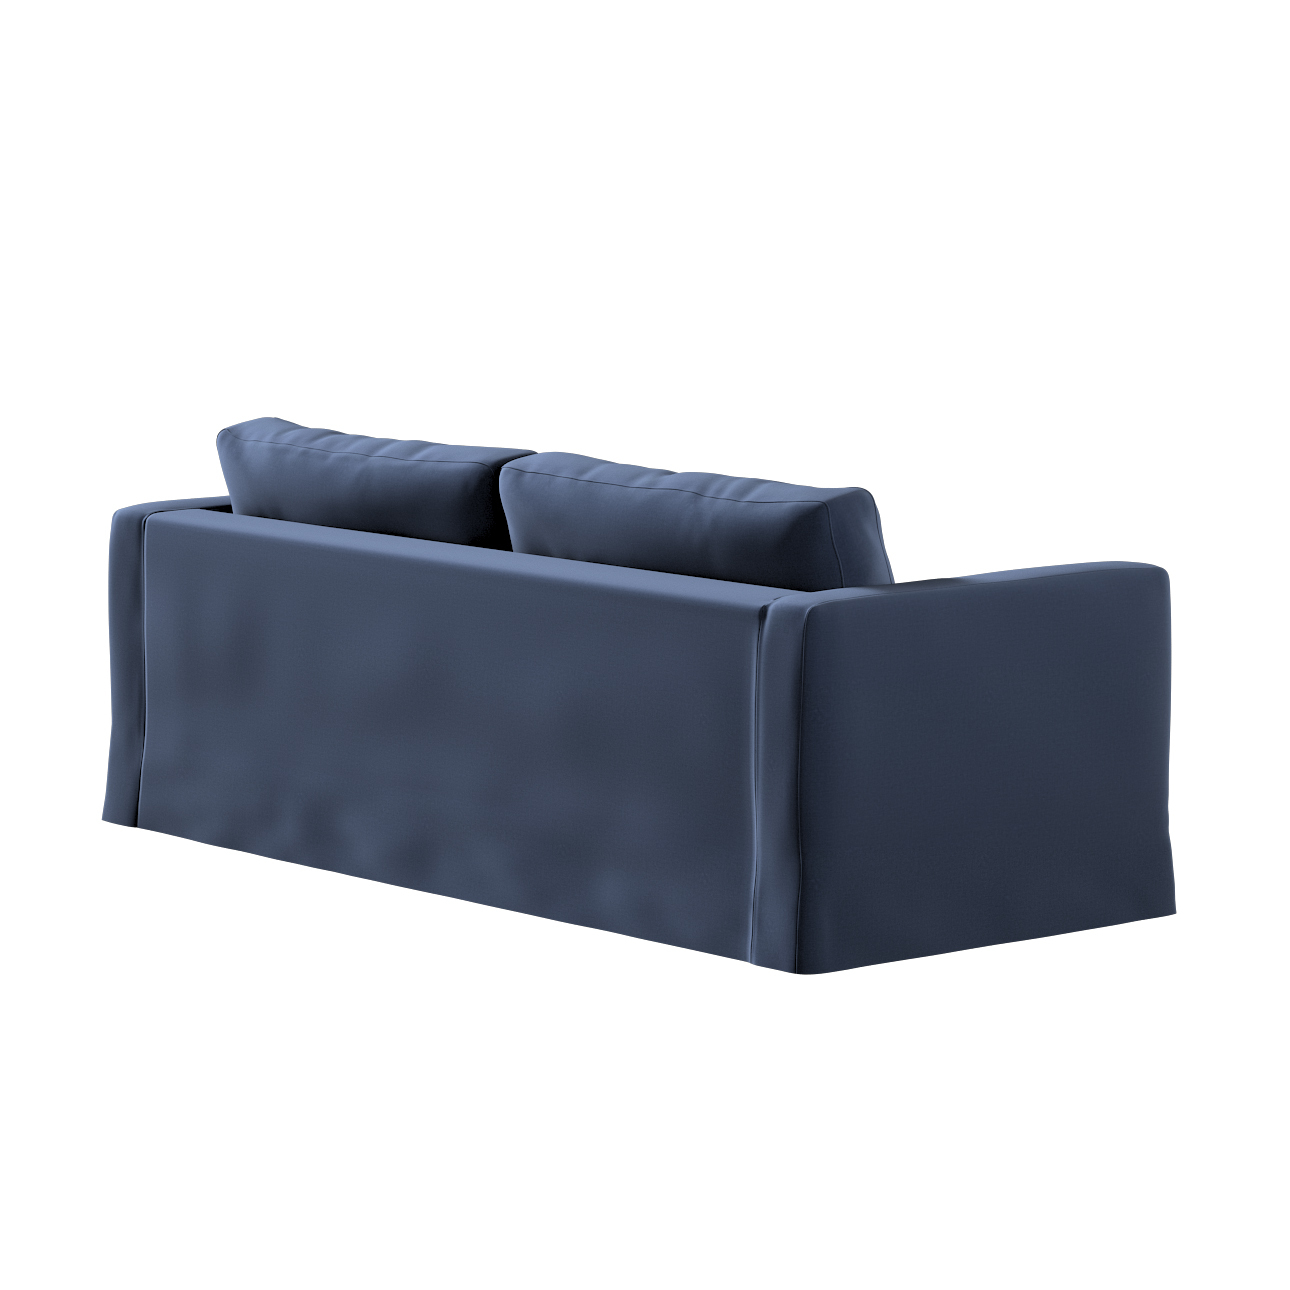 Bezug für Karlstad 3-Sitzer Sofa nicht ausklappbar, lang, dunkelblau, Bezug günstig online kaufen